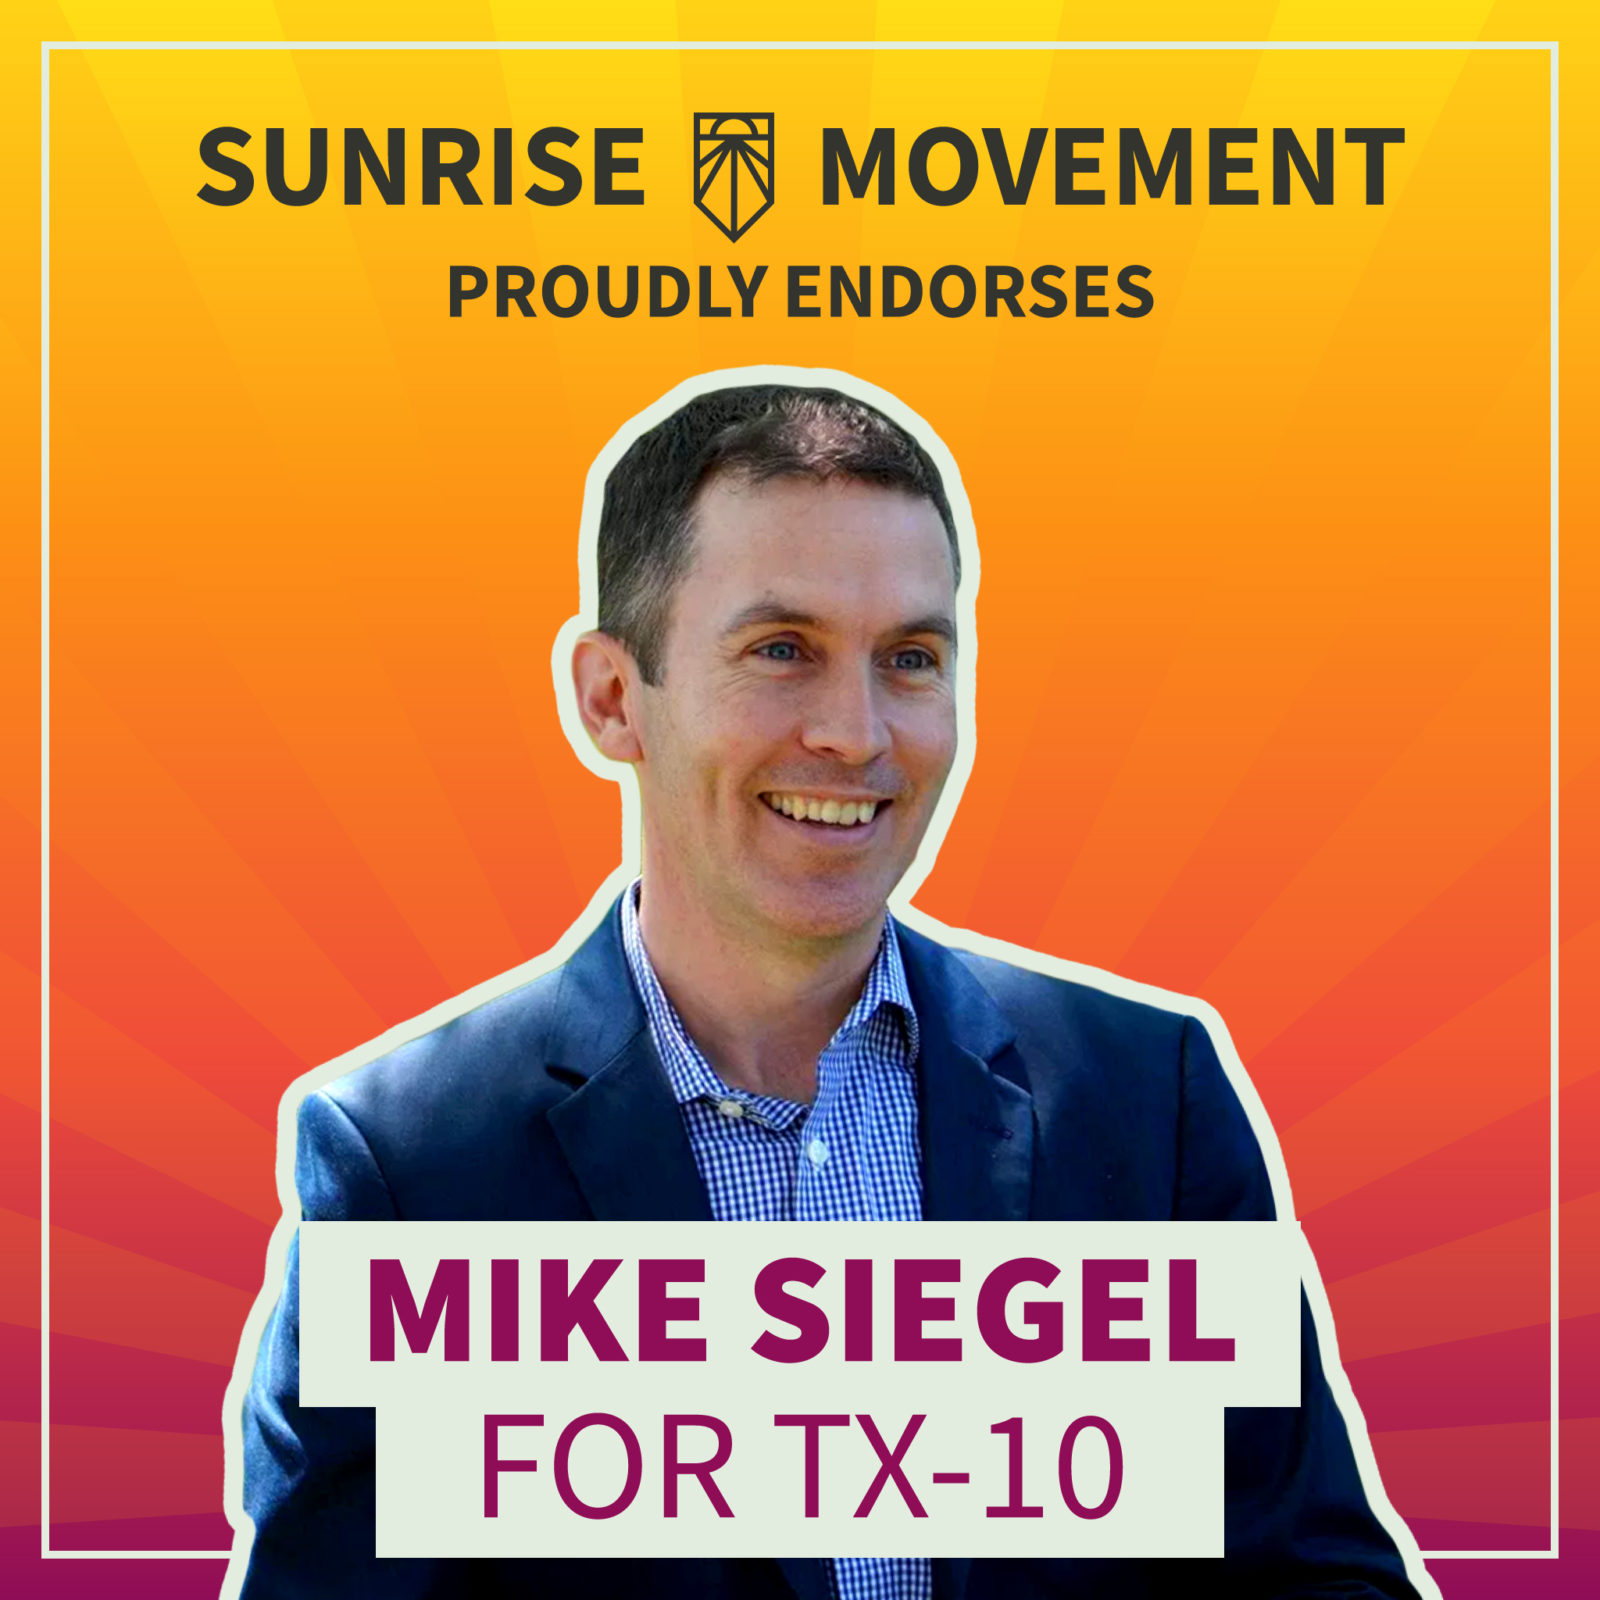 Una foto de Mike Siegel con texto: Sunrise Movement respalda con orgullo a Mike Siegel para TX-10